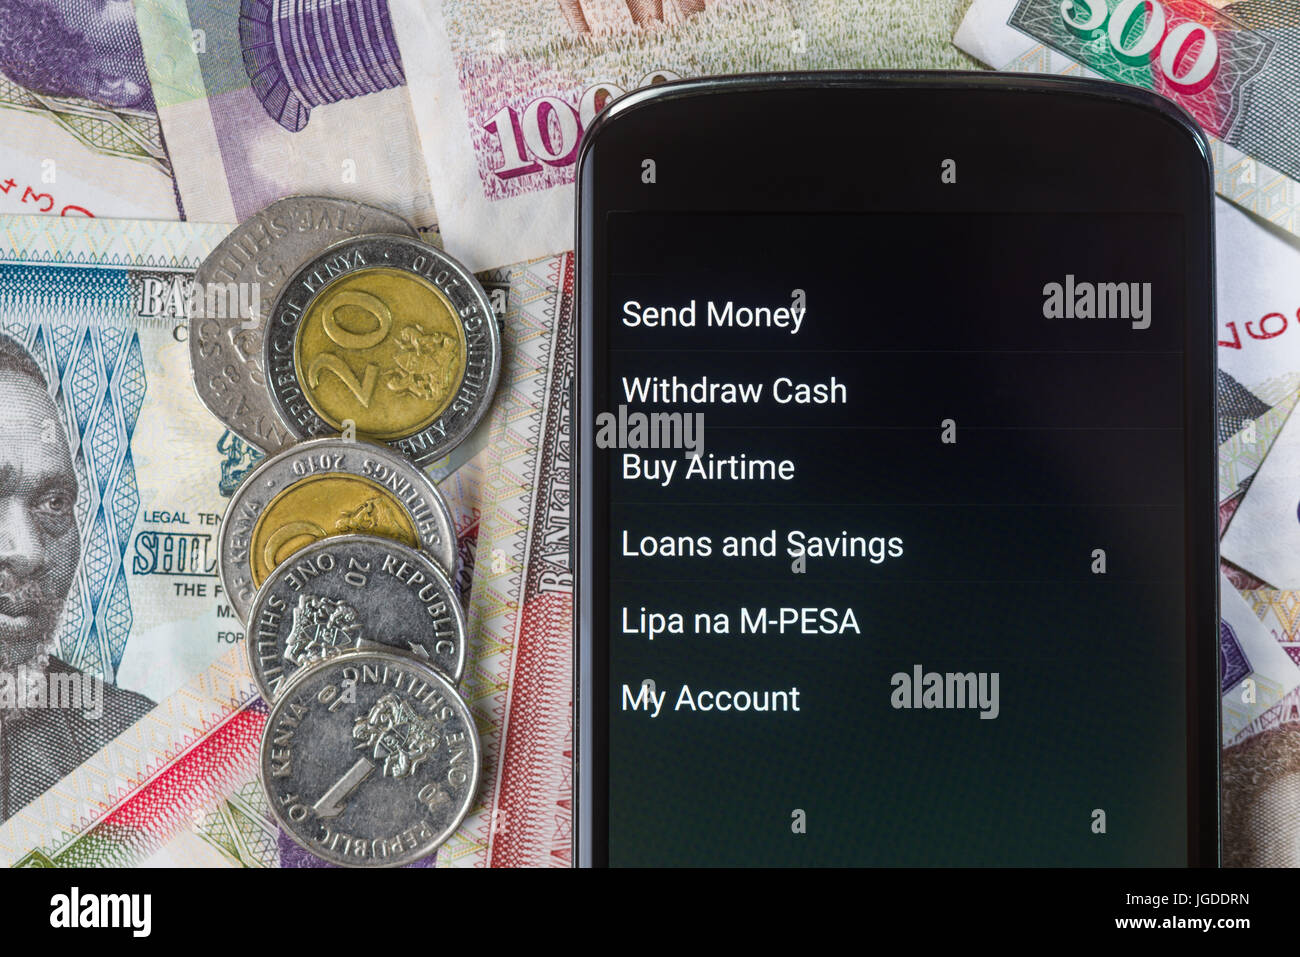 M-Pesa de Safaricom microfinance fintech des transactions d'argent sur votre téléphone avec service Kenyan Shilling bank notes contexte Banque D'Images